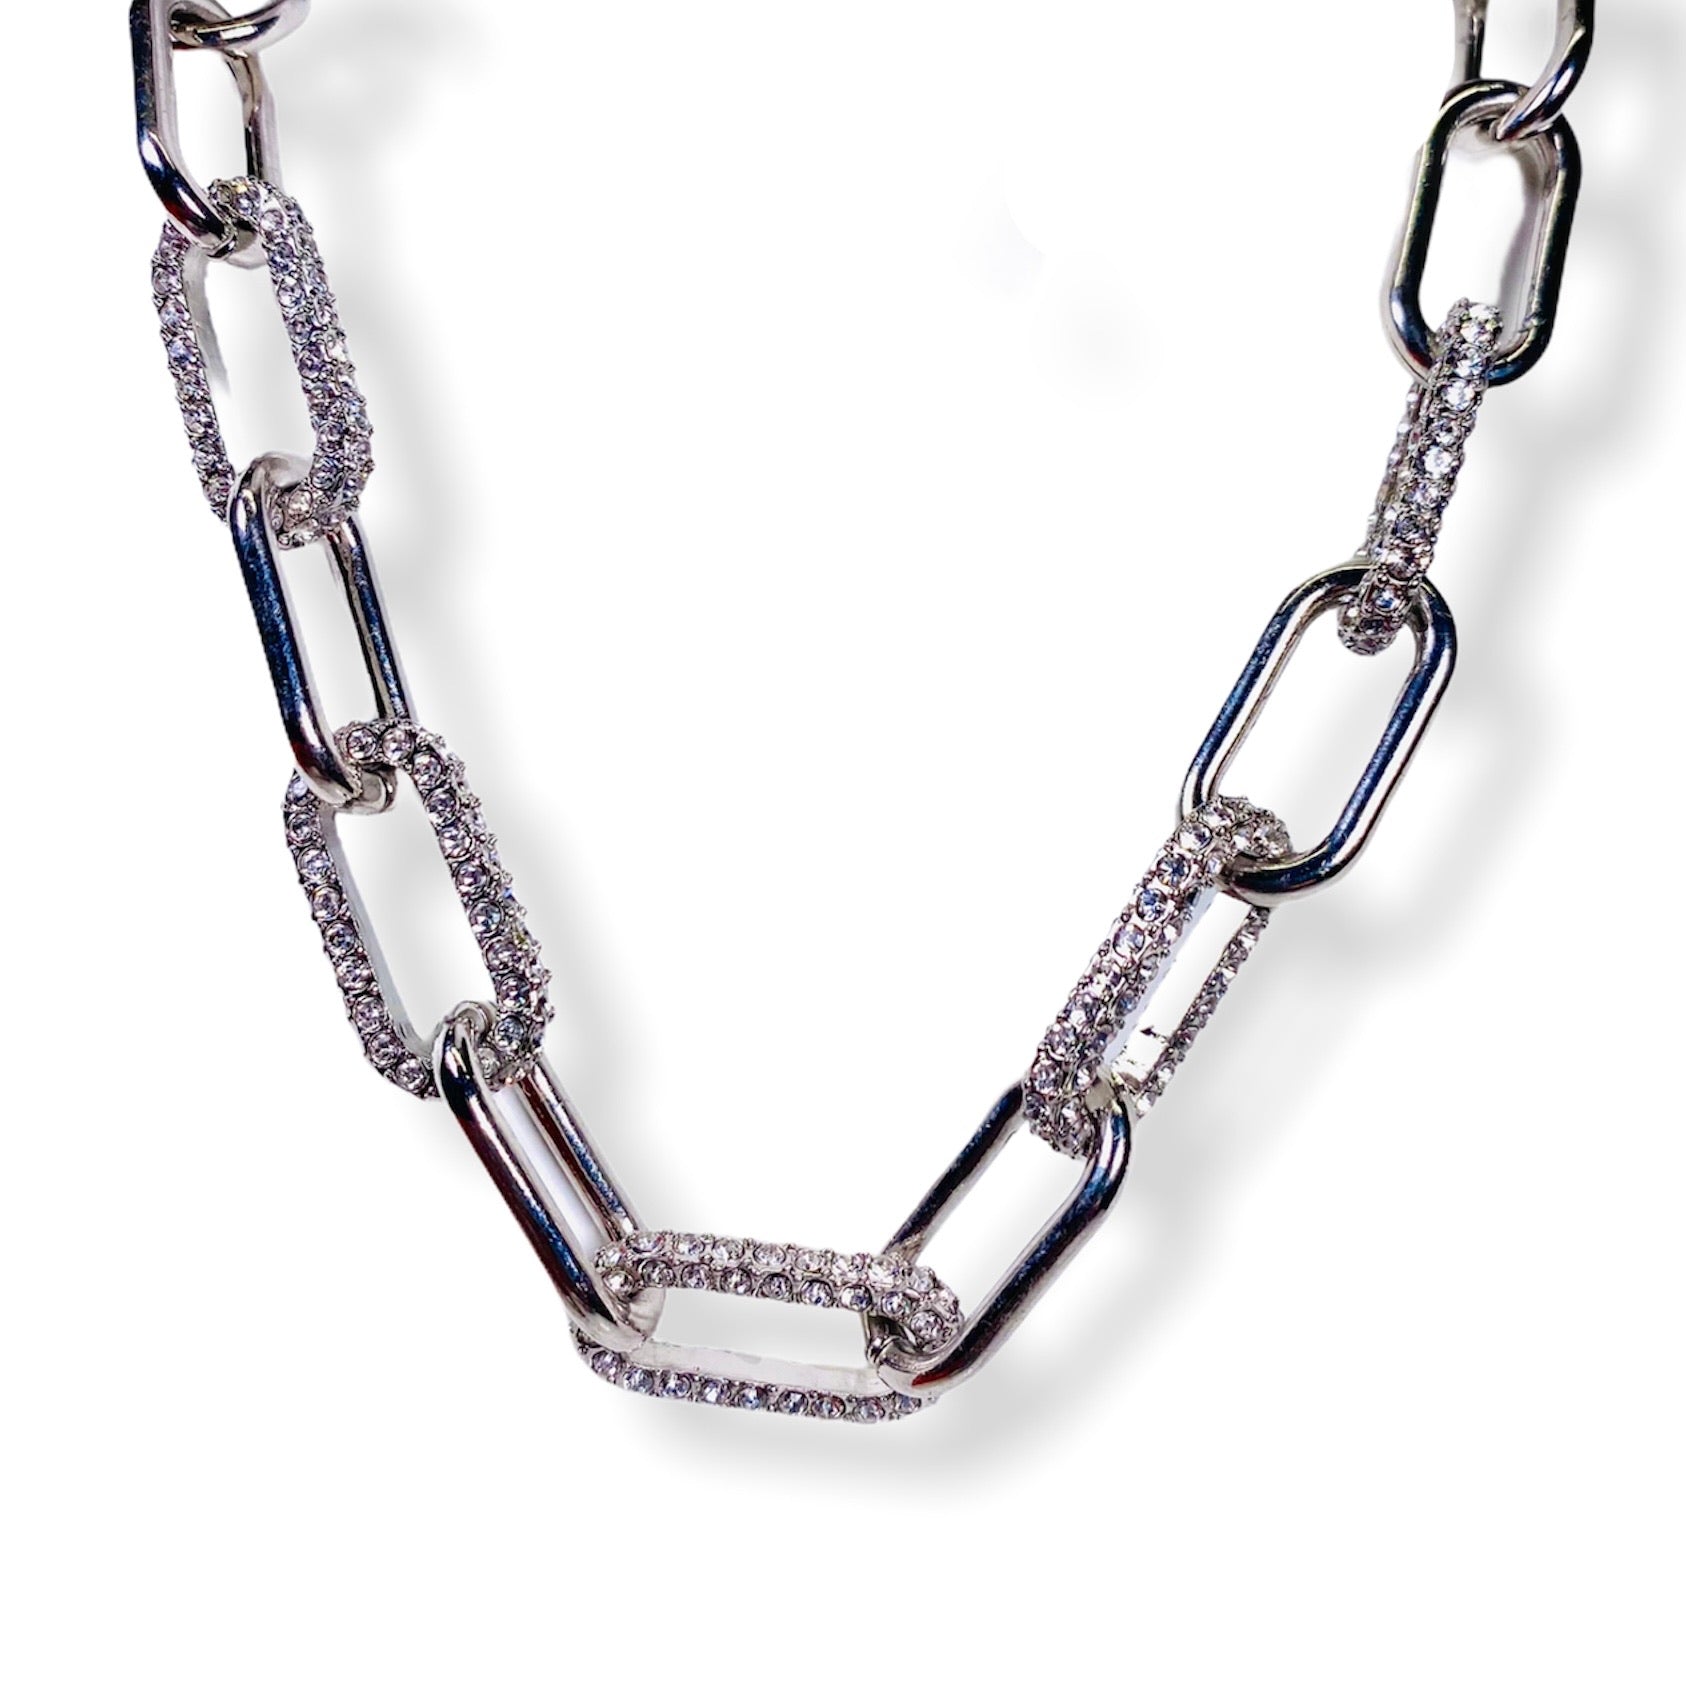 Imperium necklace